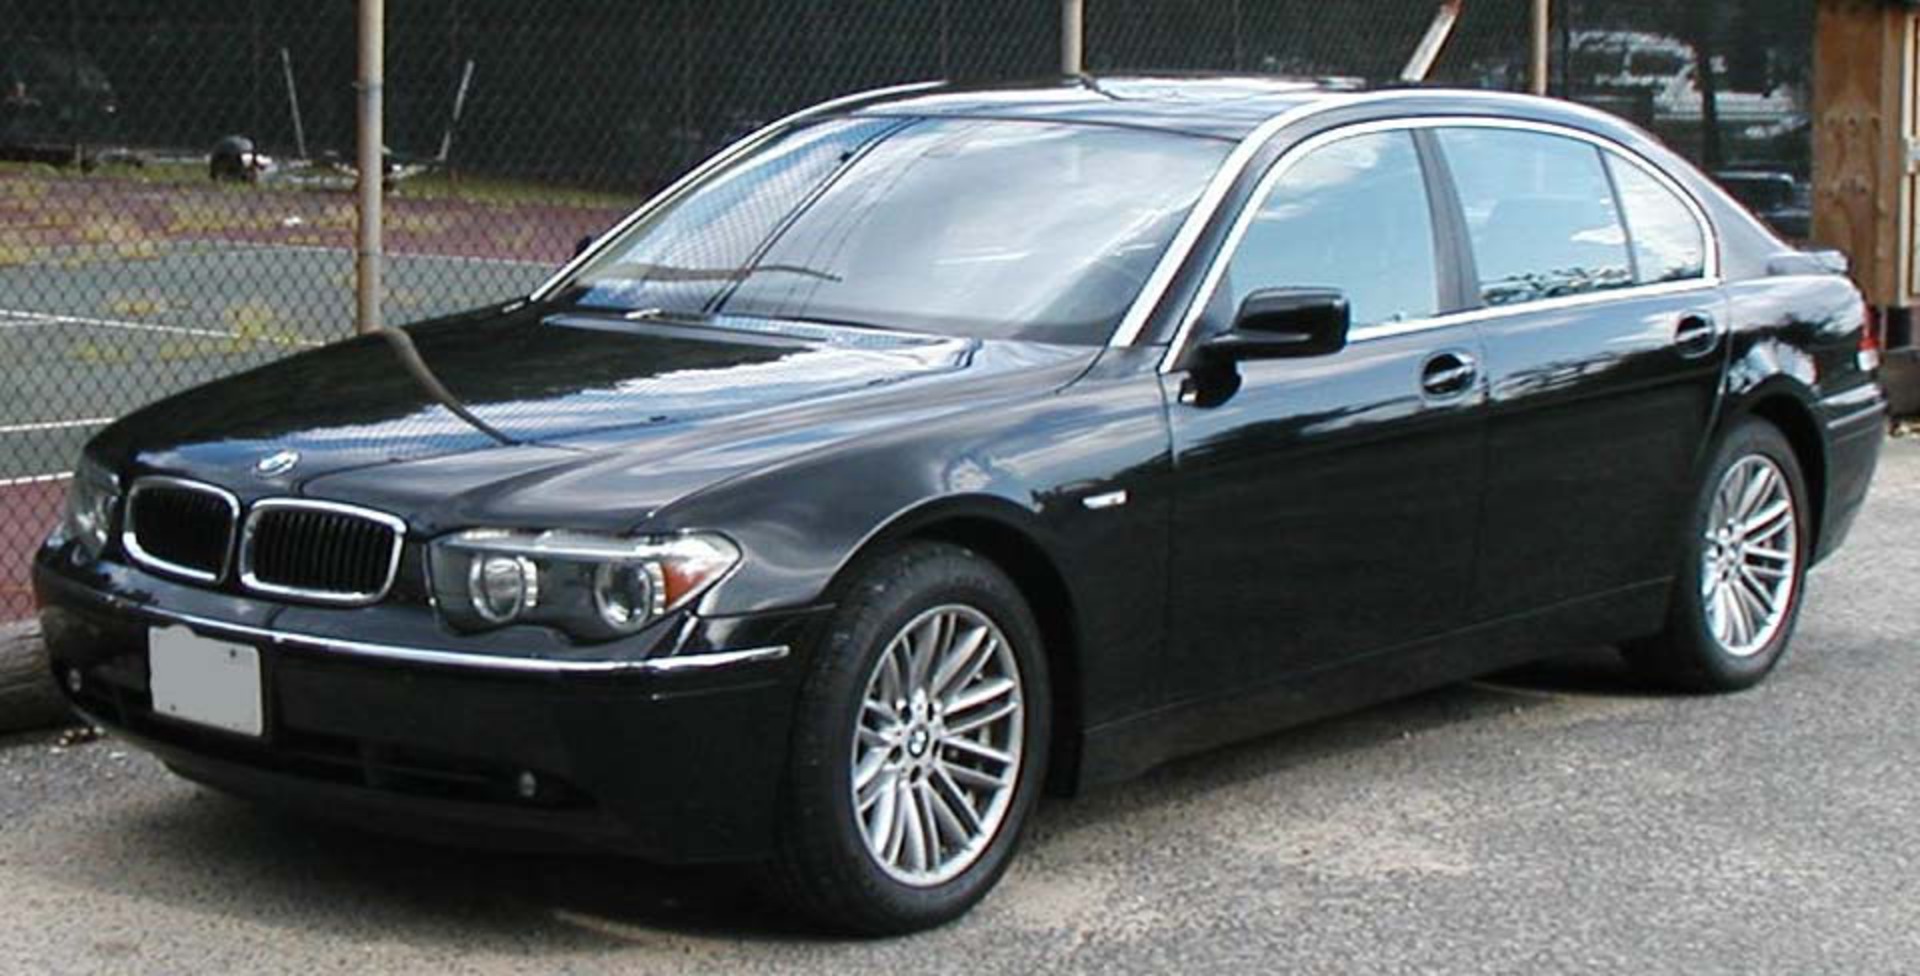 Dossier : BMW-745.jpg - Wikimedia Commons